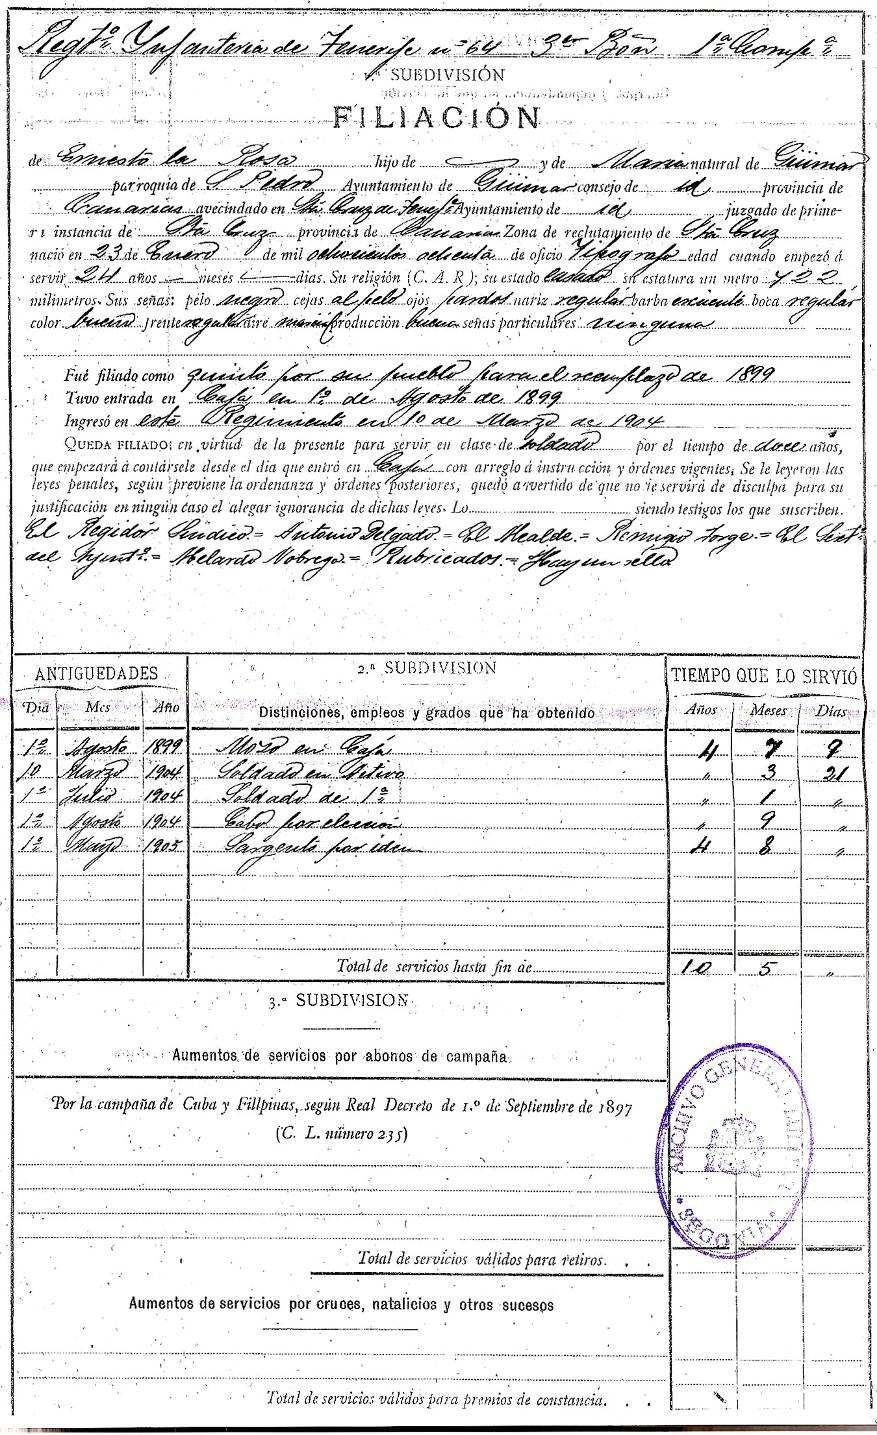 El 4 de septiembre de 1909, el sargento de la Rosa Lugo marchó al pueblo de Arico, en uso de tres meses de licencia por enfermo que le habían sido concedidos por el capitán general de Canarias; y el